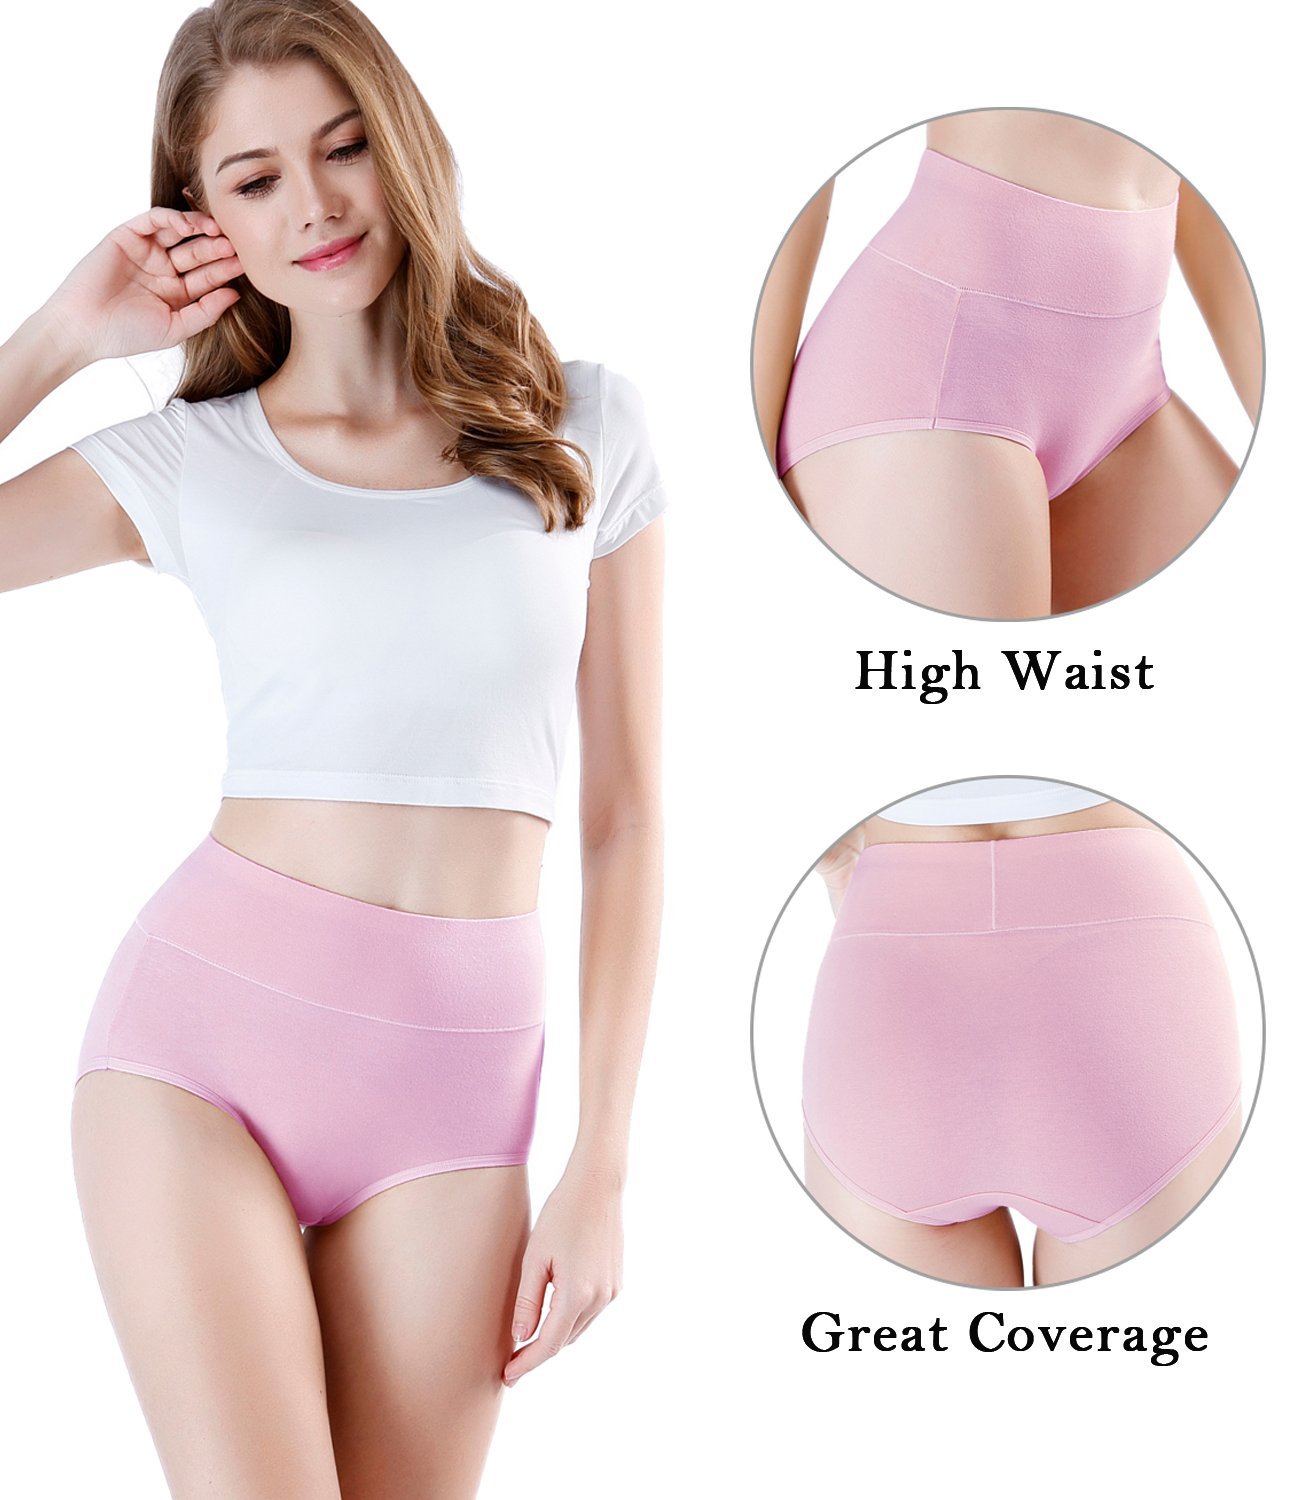 wirarpa Women’s High Waist Full Coverage Cotton Underwear 4 Pack